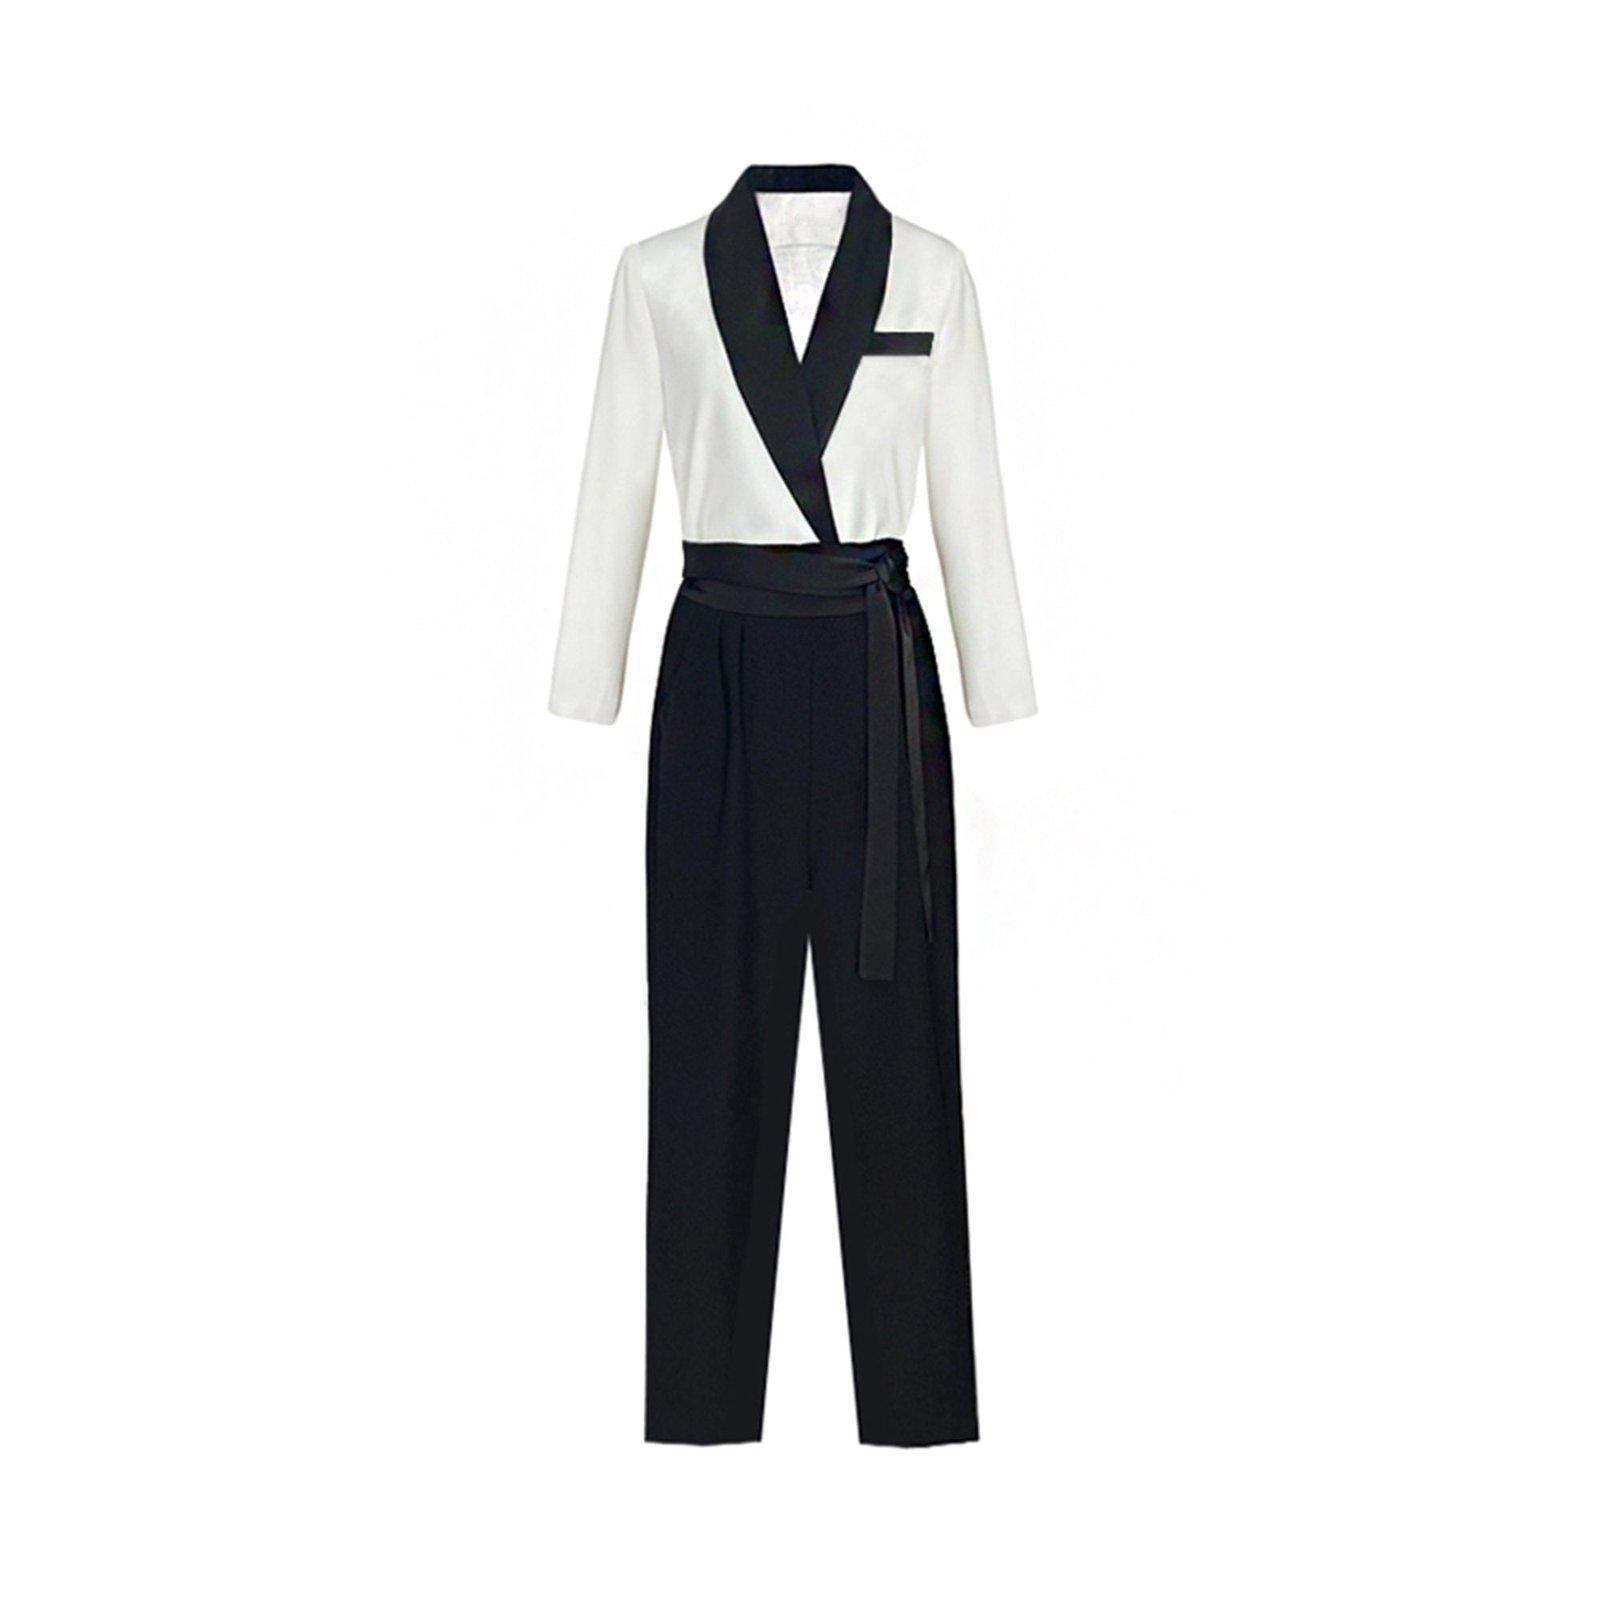 Women White Civil Wedding Suit, Three Piece Suit, Wedding Guest Suit,  Rehearsal Dinner Suit, Blazer Trousers Suit - Etsy